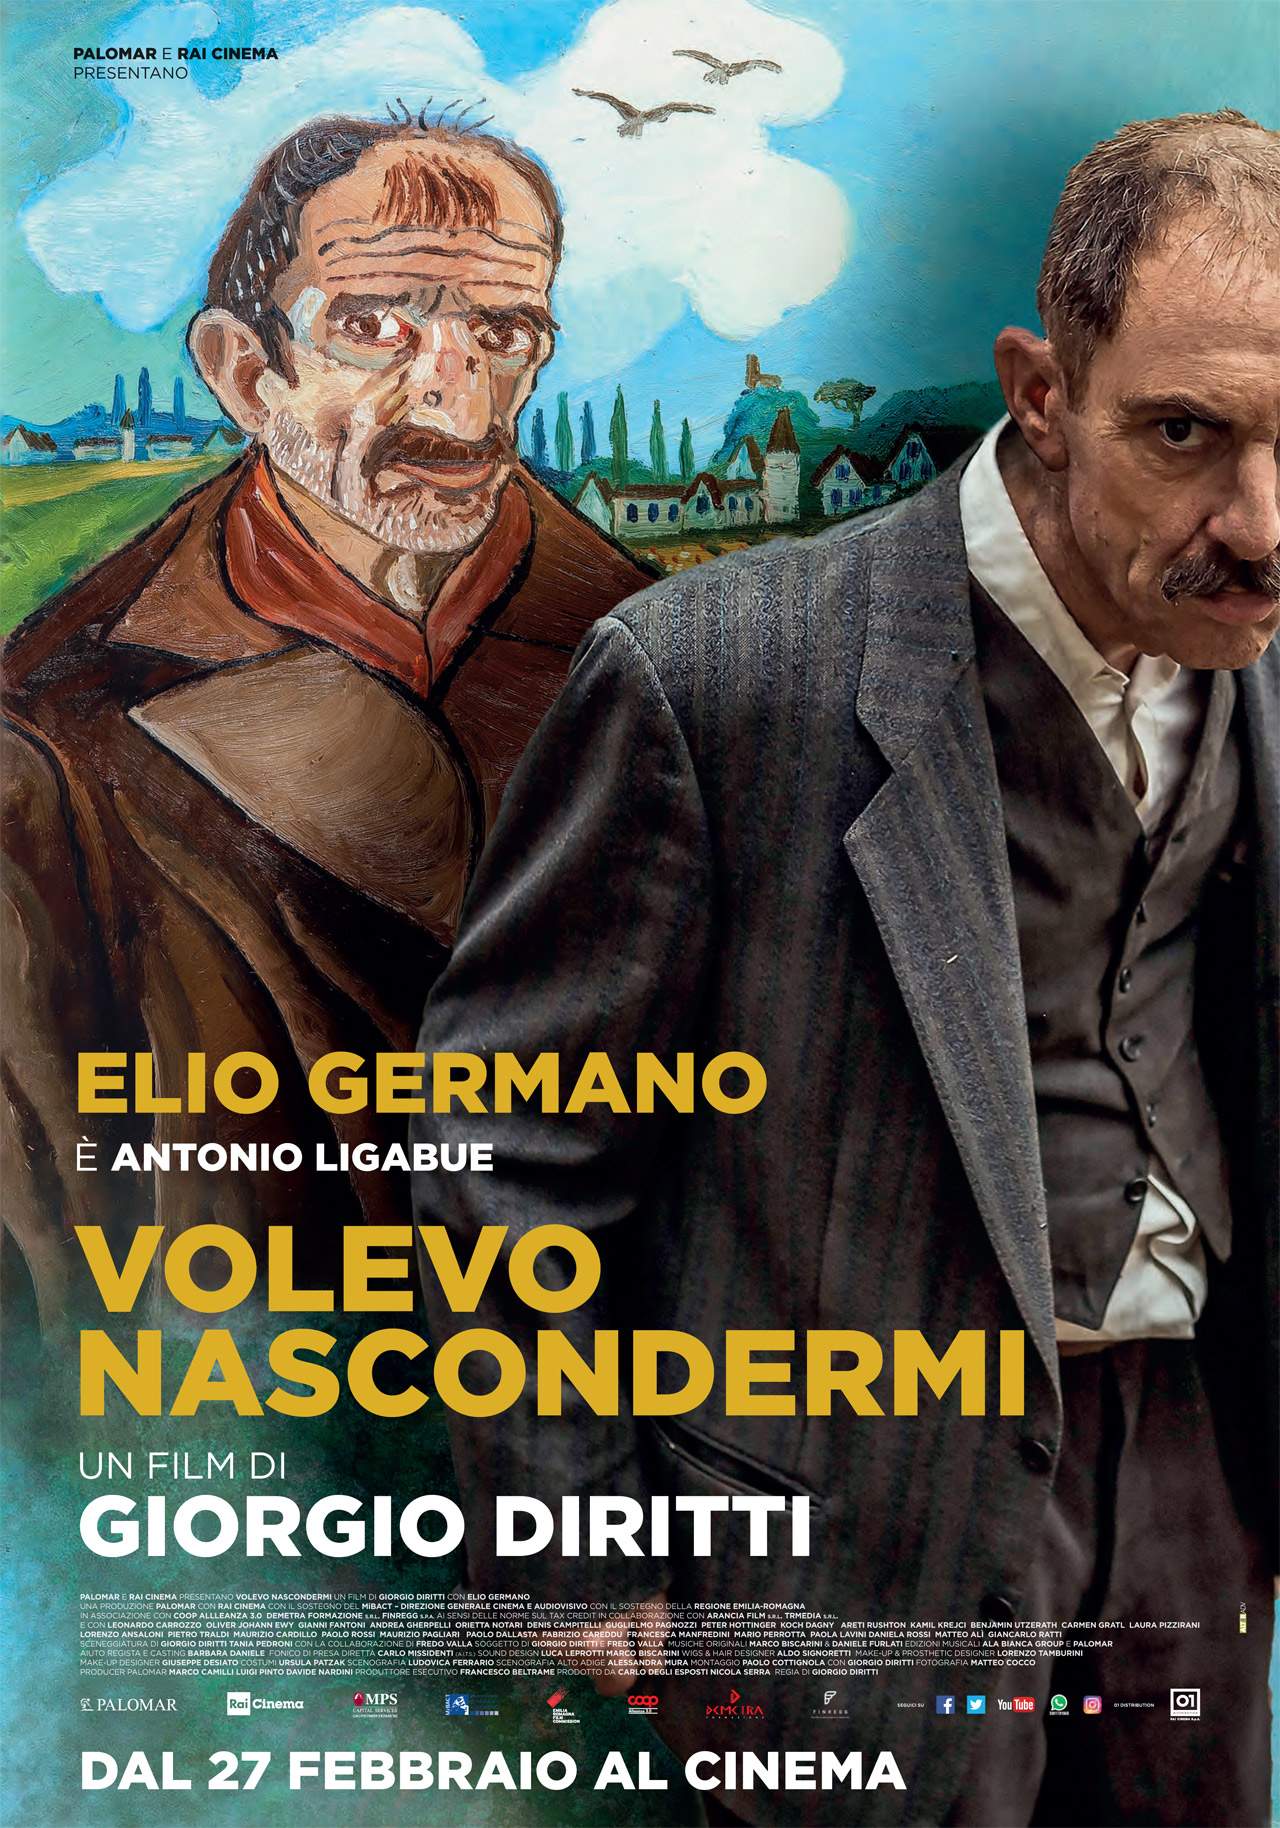 Here's what Elio Germano looks like as Antonio Ligabue. The film 